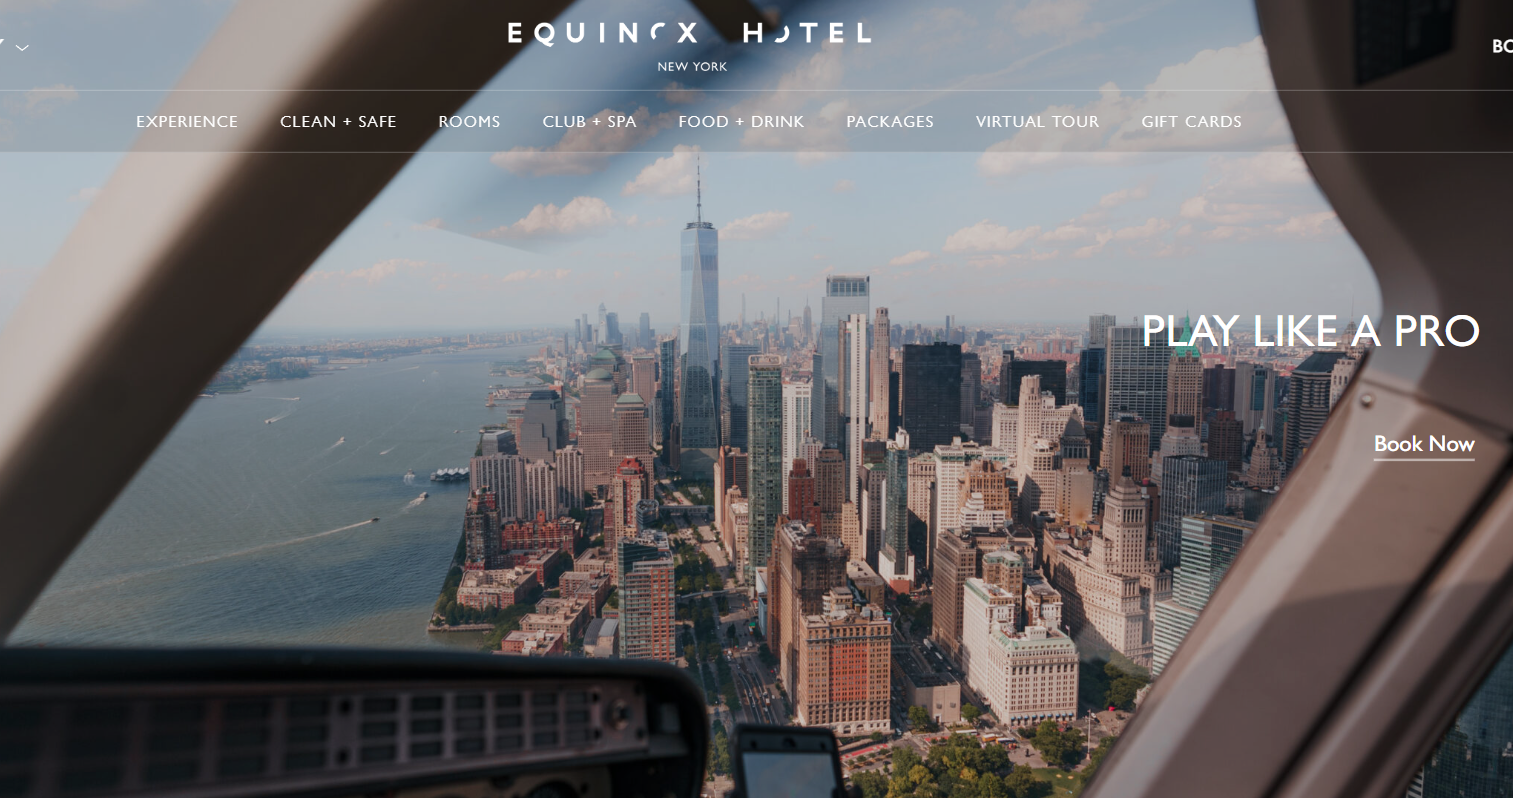 纽约豪华健身房 Equinox 旗下酒店推出美网公开赛定制服务，客人可乘直升机往返于酒店和赛场